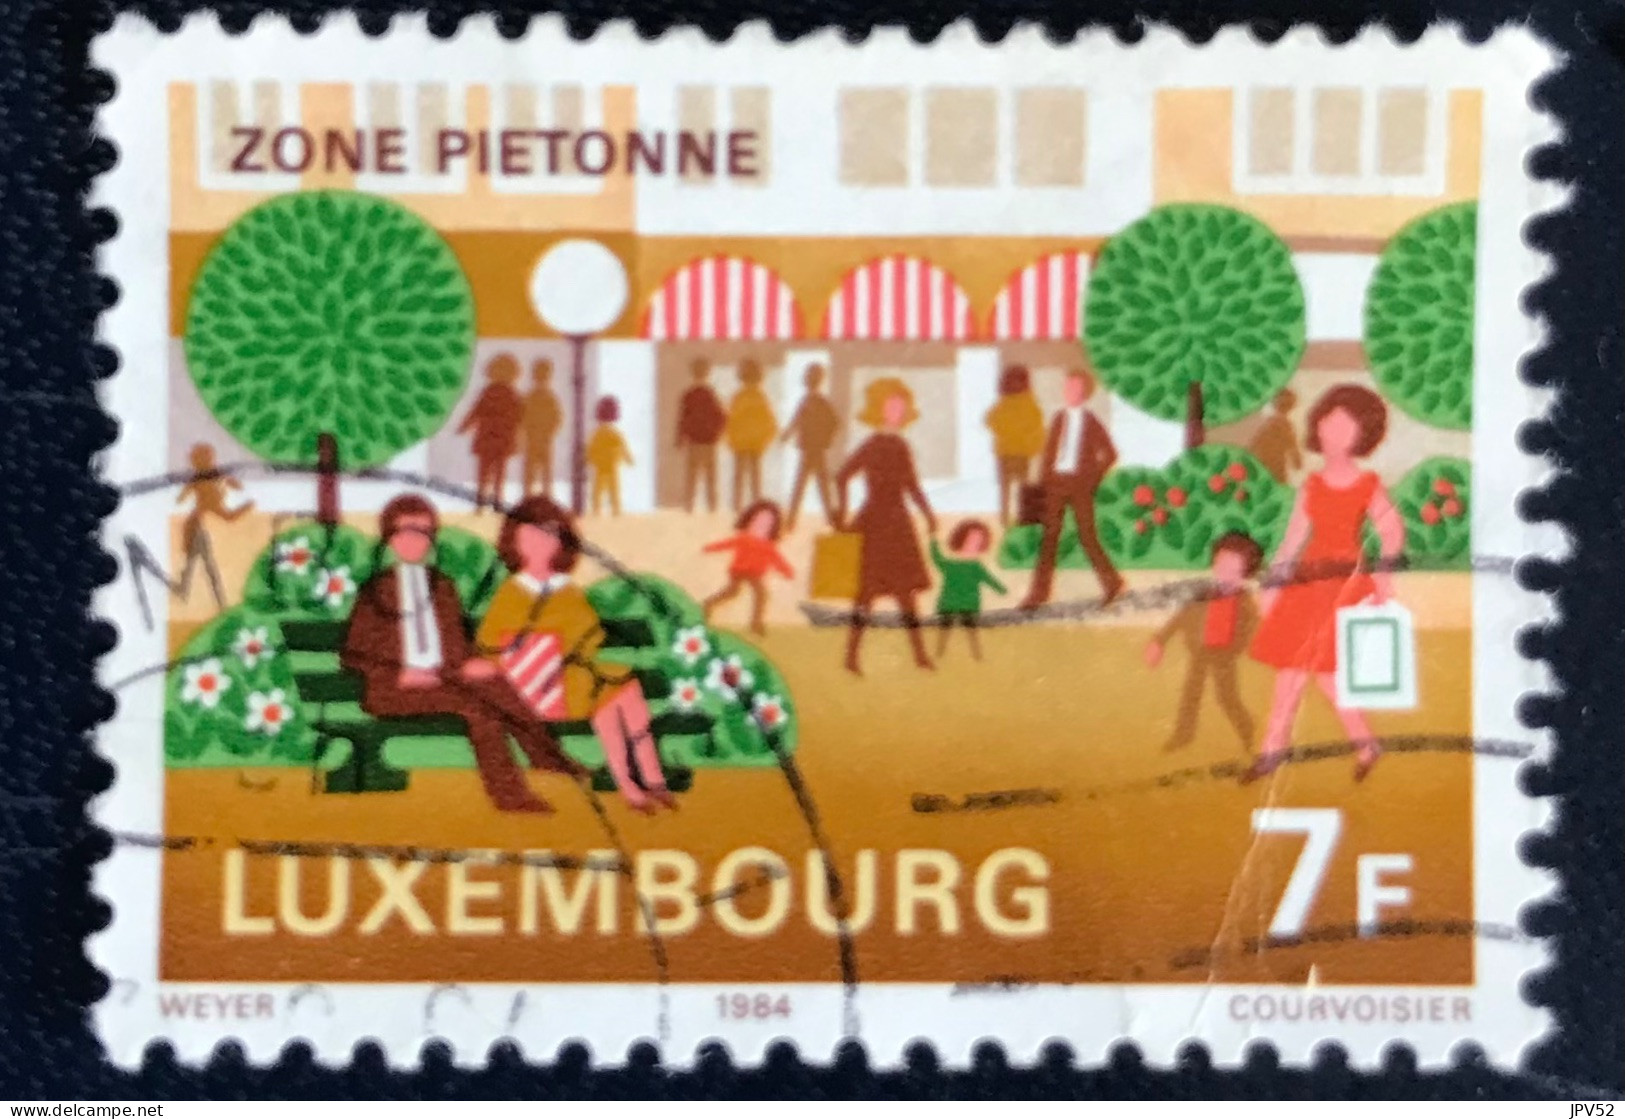 Luxembourg - Luxemburg - C18/34 - 1984 - (°)used - Michel 1095 - Milieubescherming - Gebraucht